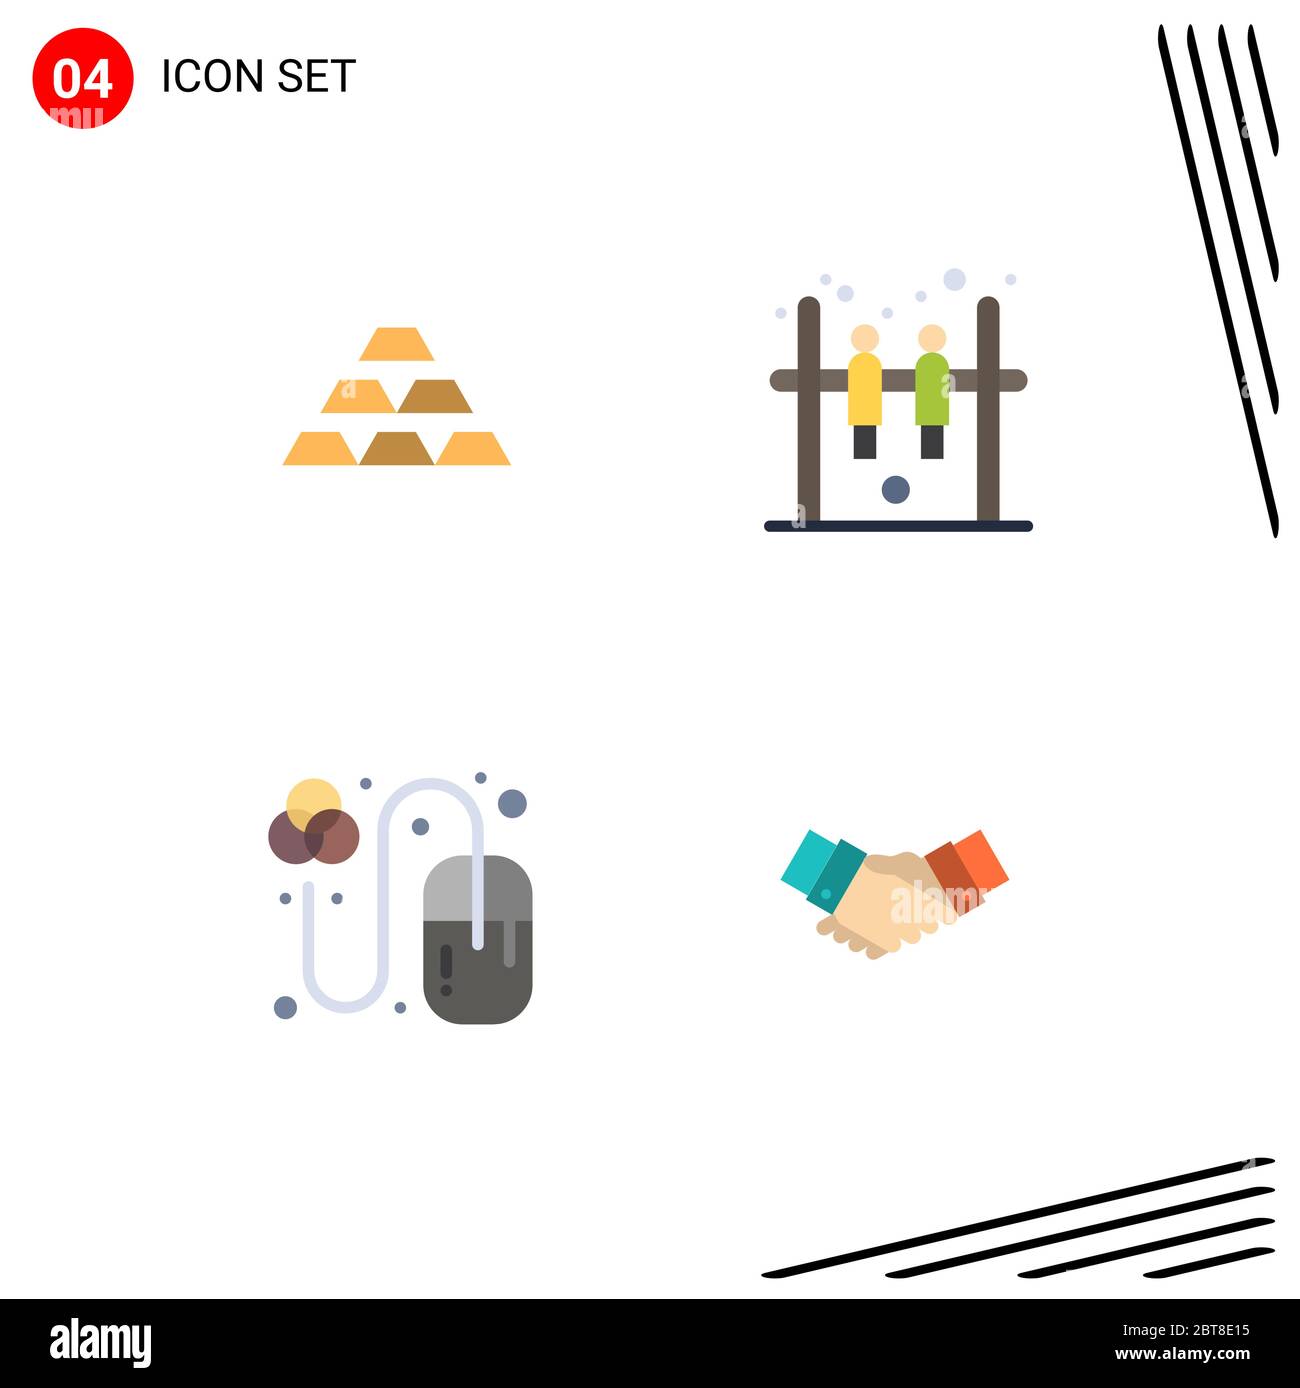 4 interfaccia utente Flat Icon Pack di segni e simboli moderni di oro, hockey, oro, ricchezza, progettazione di elementi editabili di progettazione vettoriale Illustrazione Vettoriale